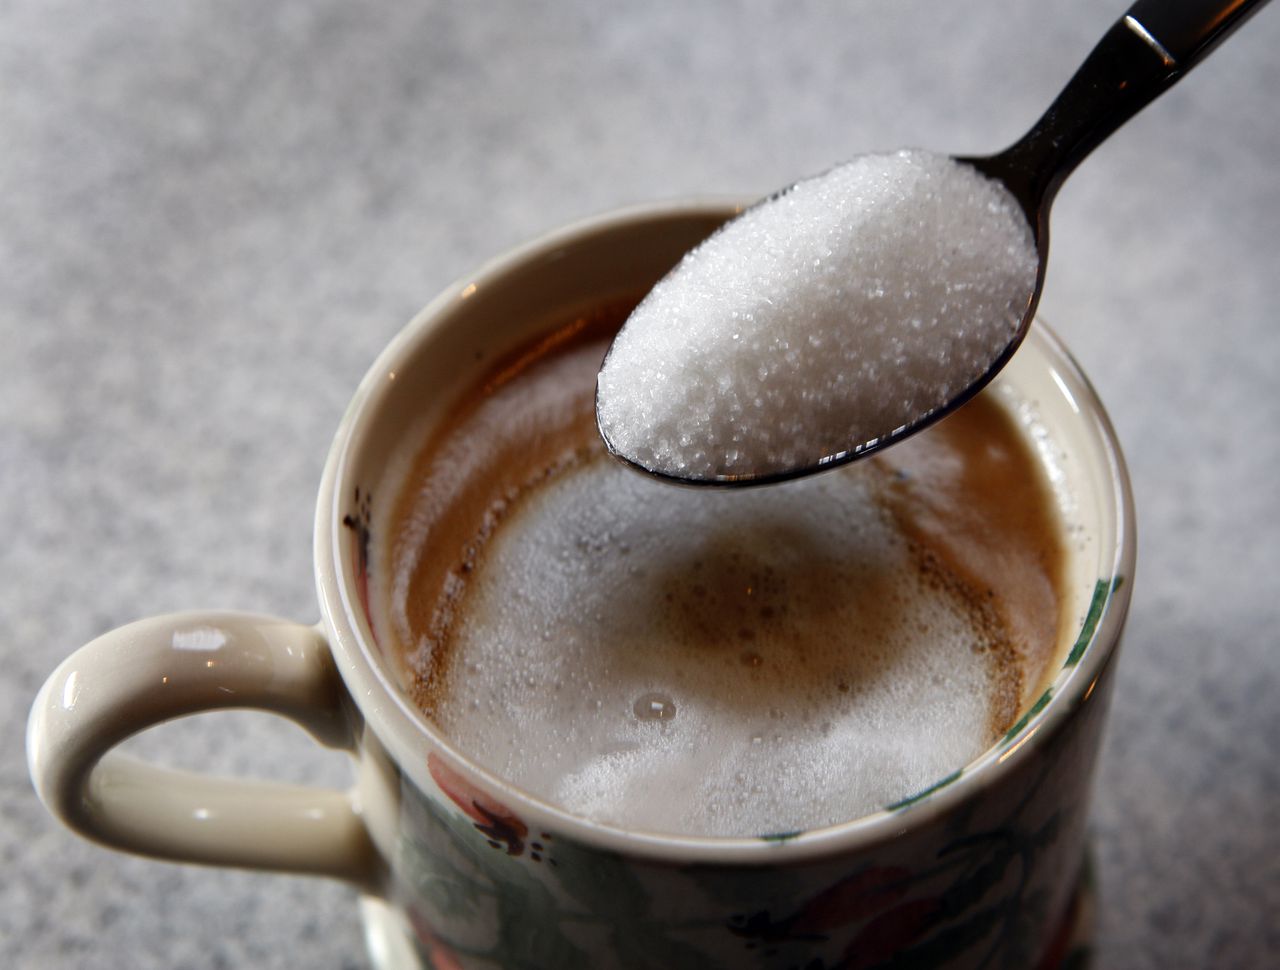 Een schepje suiker in de koffie.